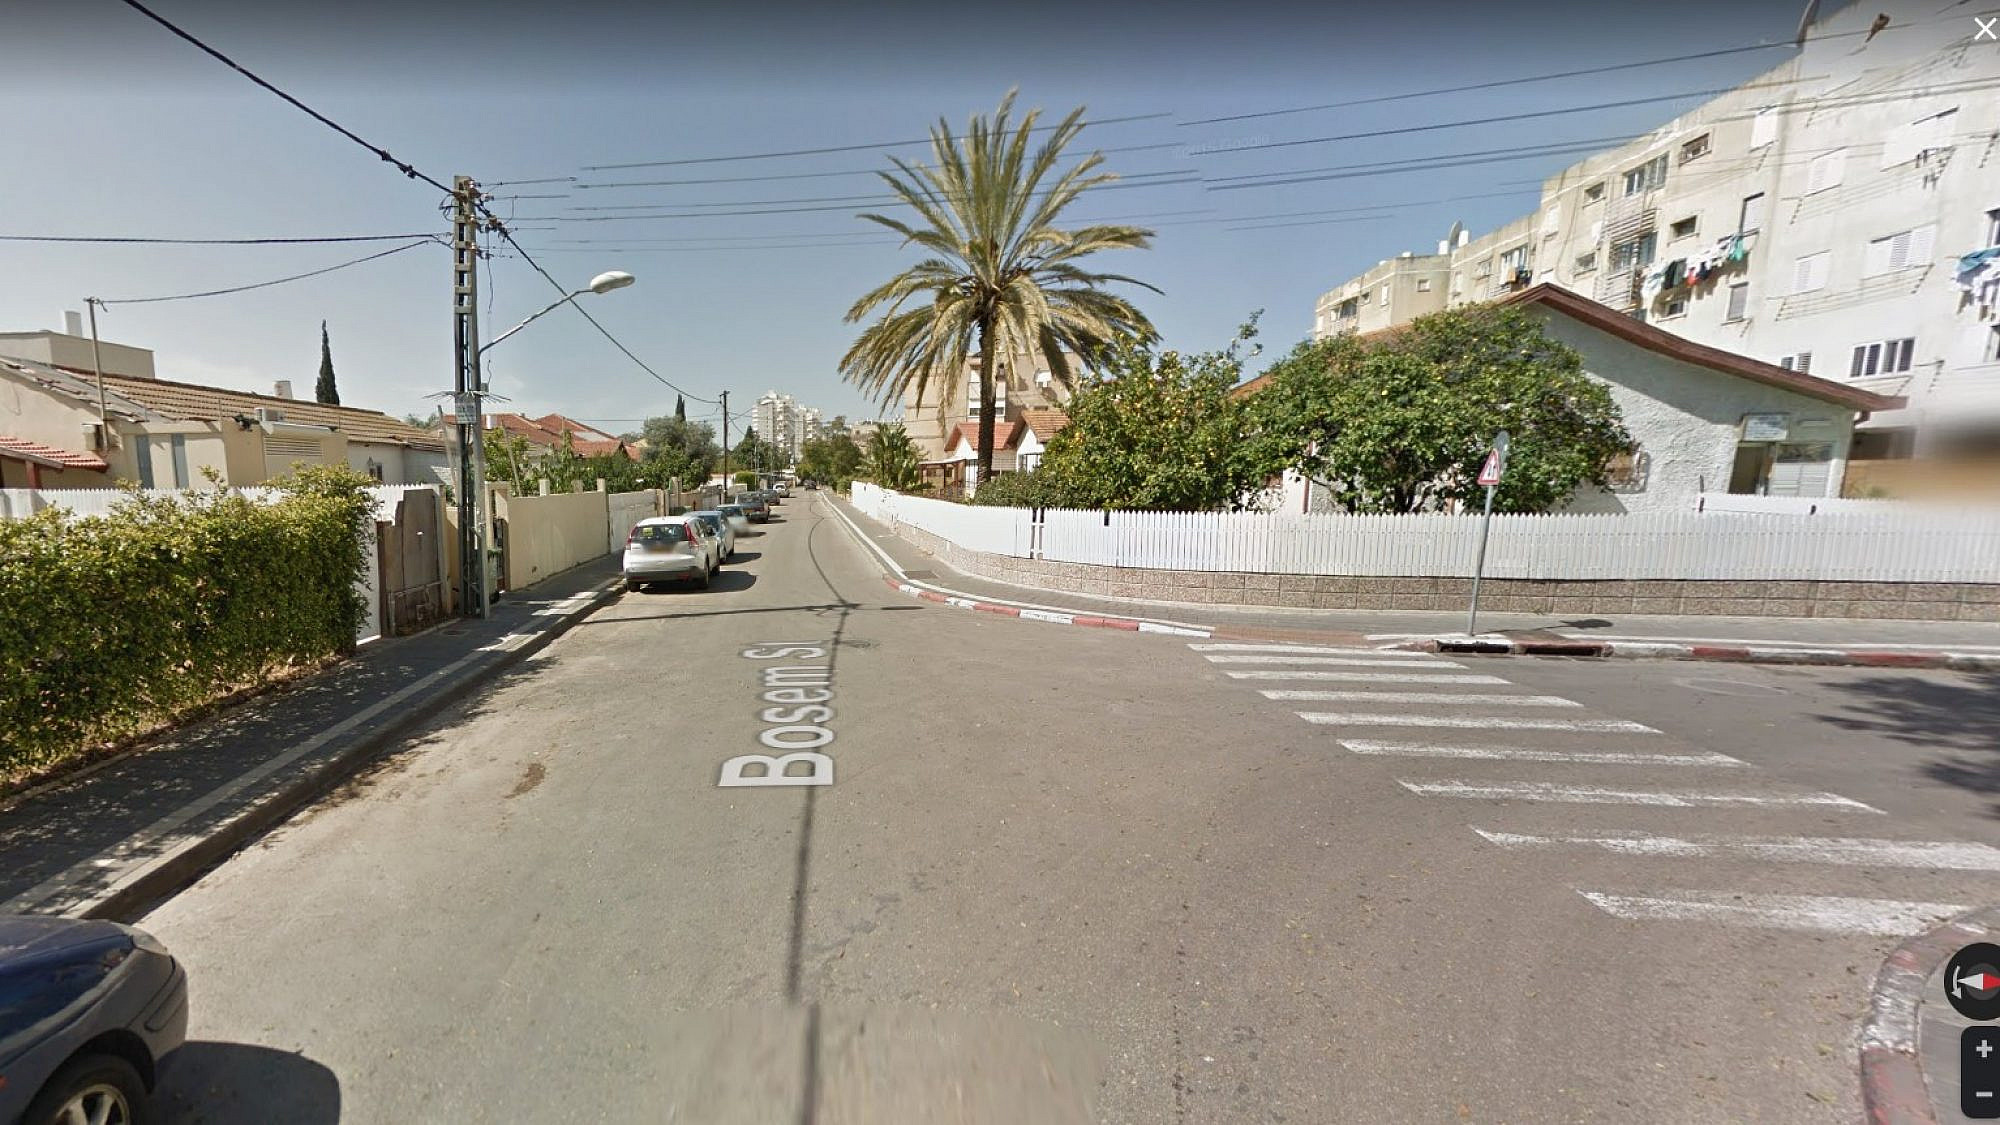 תשבעו שידעתם שיש מקום כזה בעיר. שכונת לבנה וידידיה (צילום: Google StreetView)